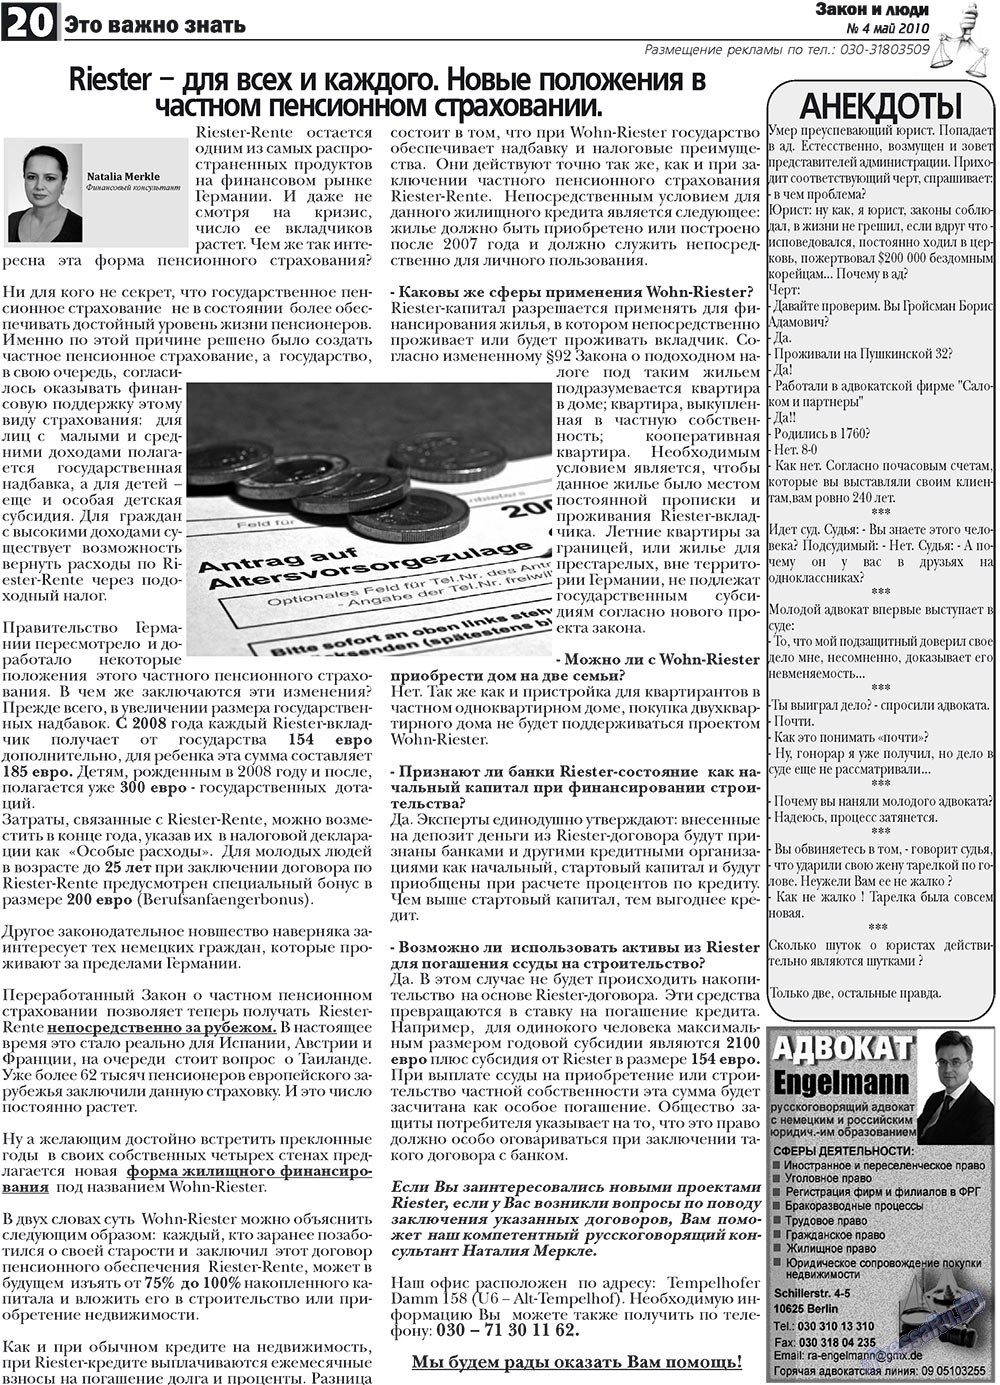 Закон и люди (газета). 2010 год, номер 4, стр. 20